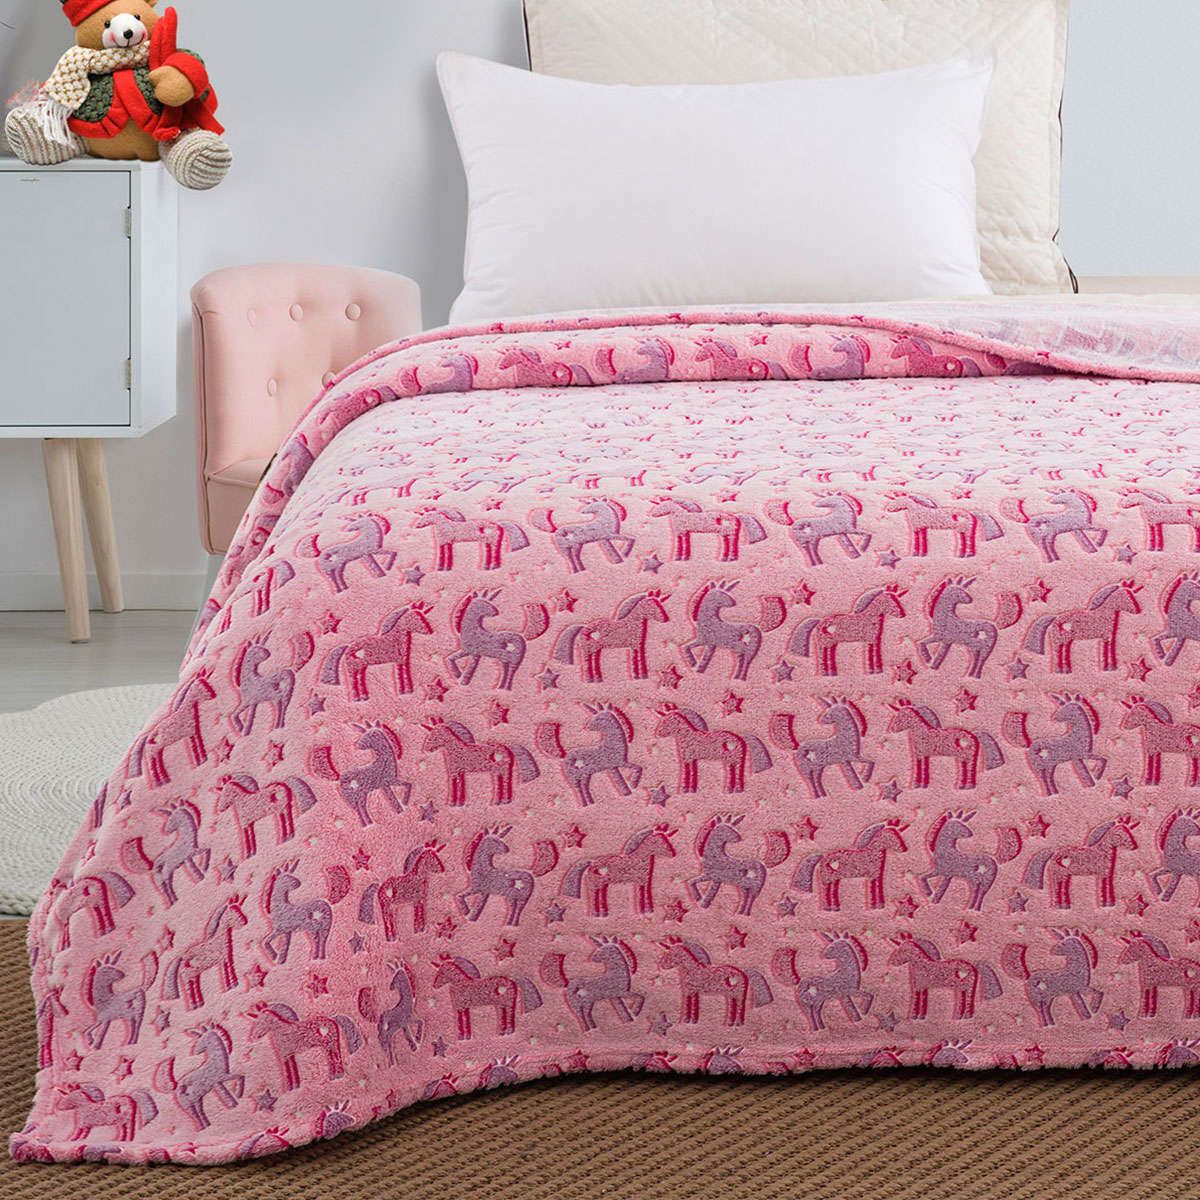 Παιδική κουβέρτα μονή φωσφορίζουσα Flash Art 6148 pink beauty home